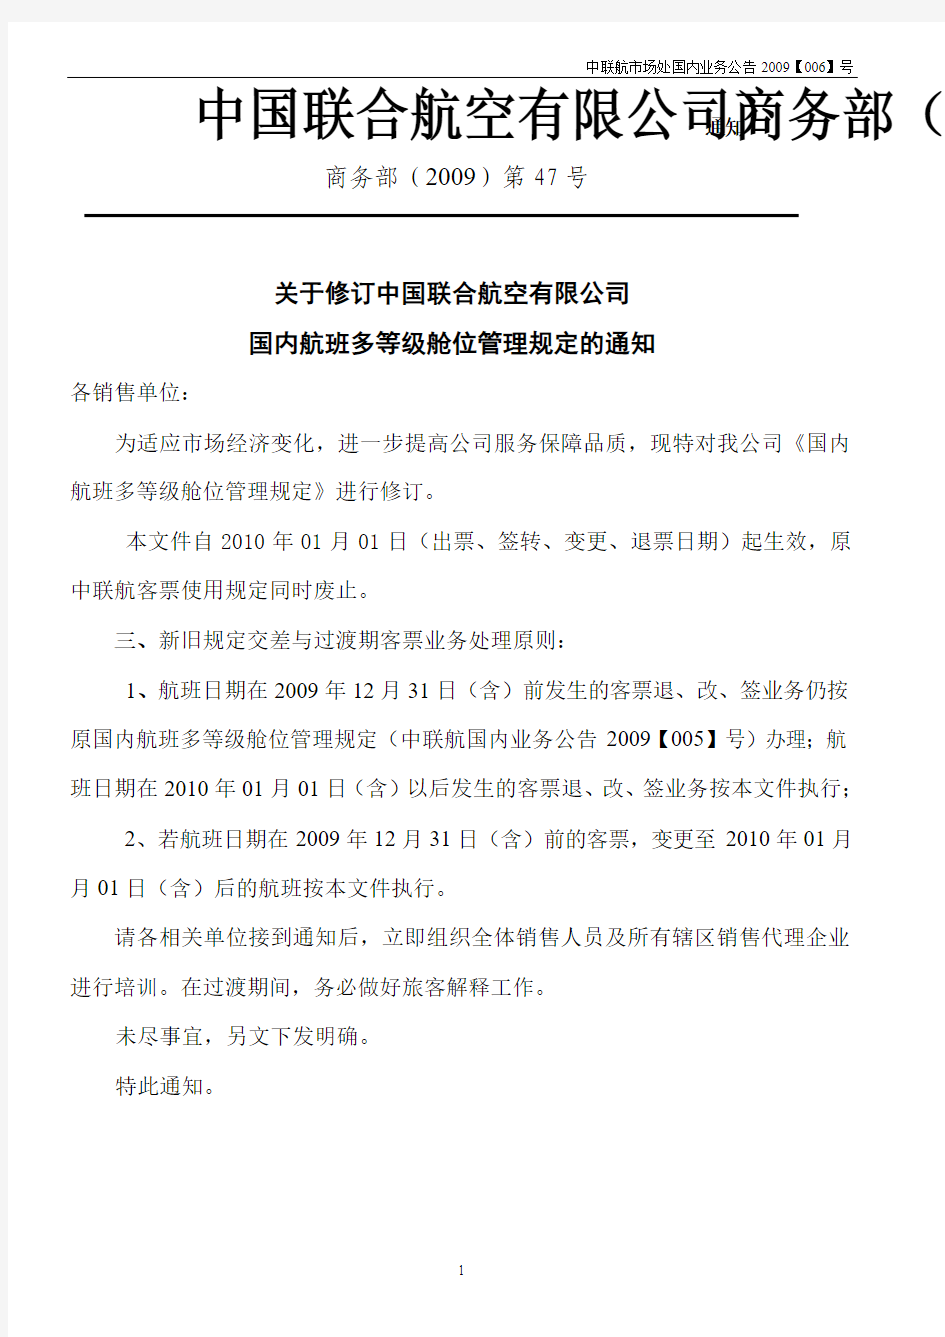 中联航国内航班多等级舱位管理规定及使用规则(航班日期2010年01月01日起执行)